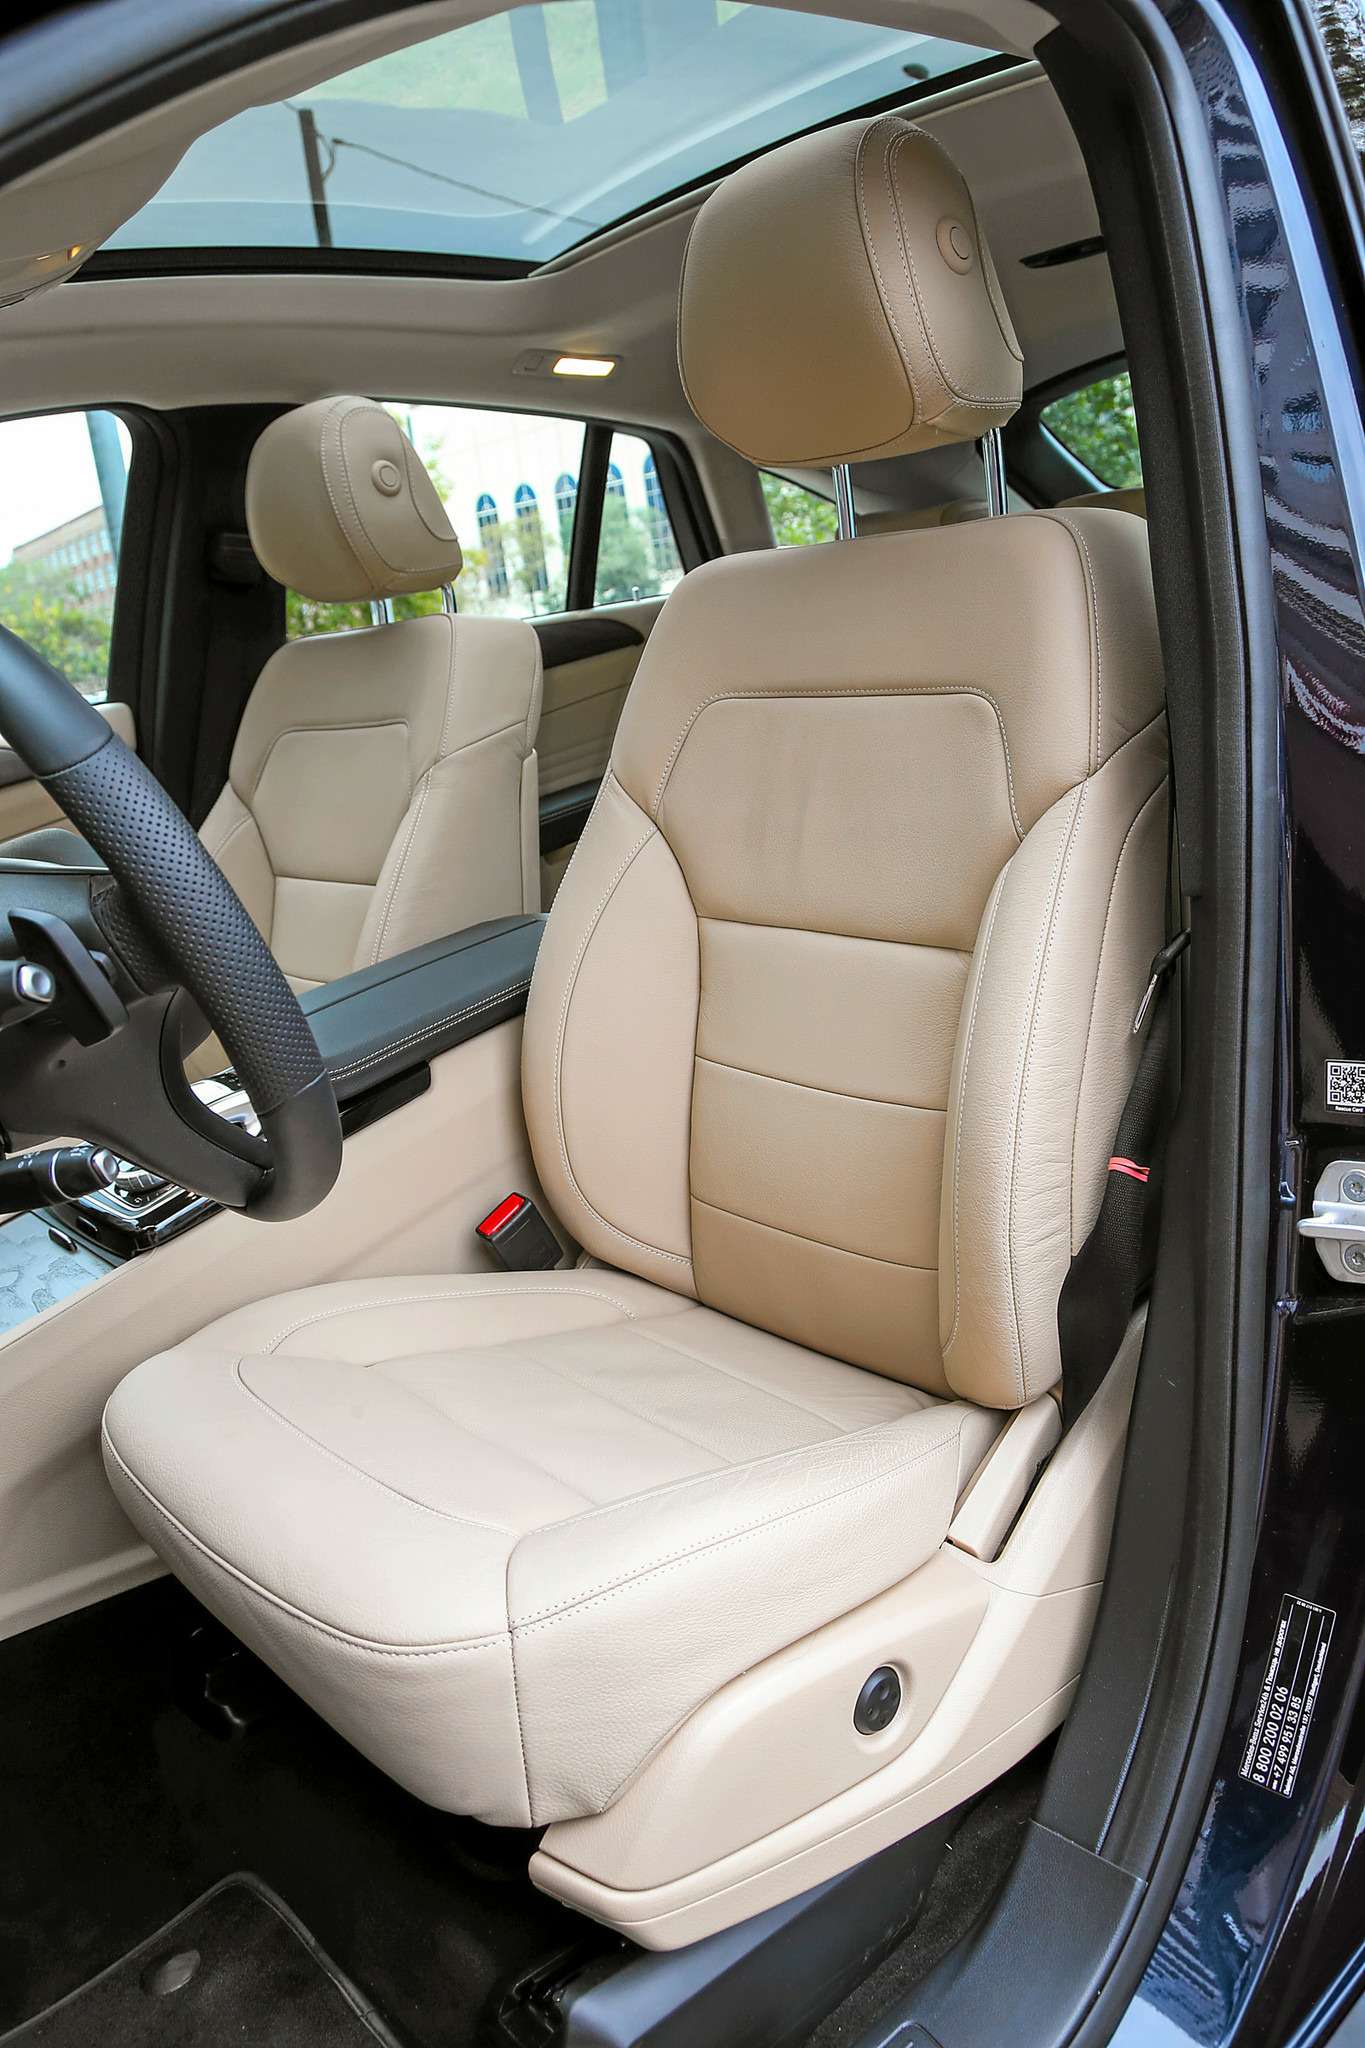 Mercedes-Benz GLE 400 4Matic Coupe. Кресла удобные, однако боковой поддержки явно недостает.